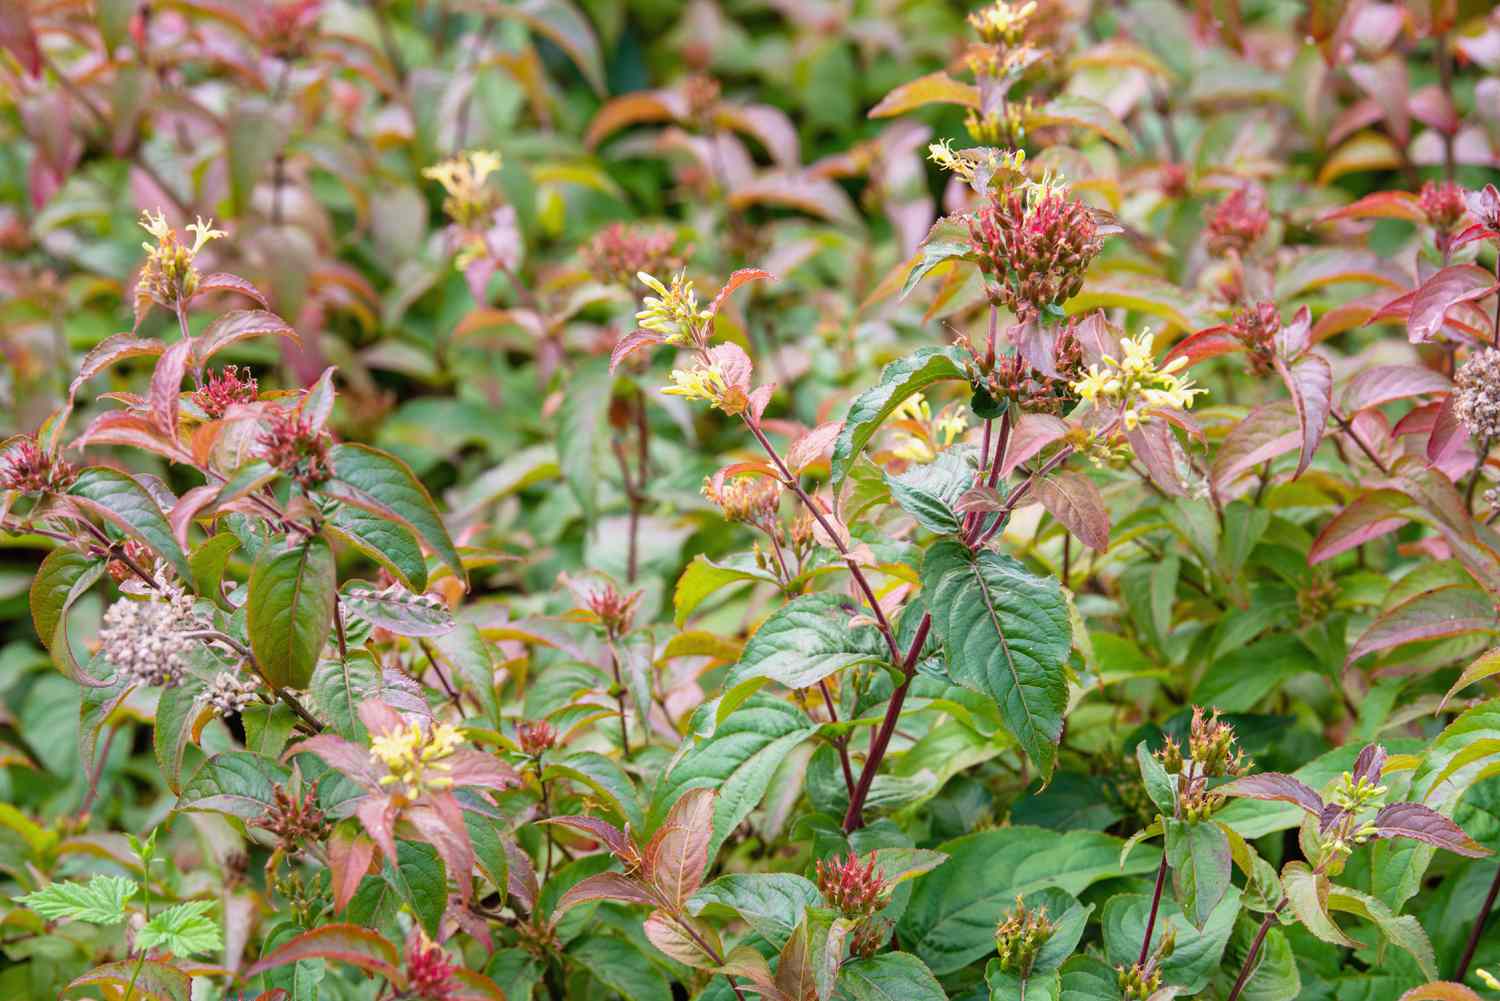 Zweige des Nördlichen Geißblattes mit roten und grünen Blättern und winzigen gelben trompetenförmigen Blüten